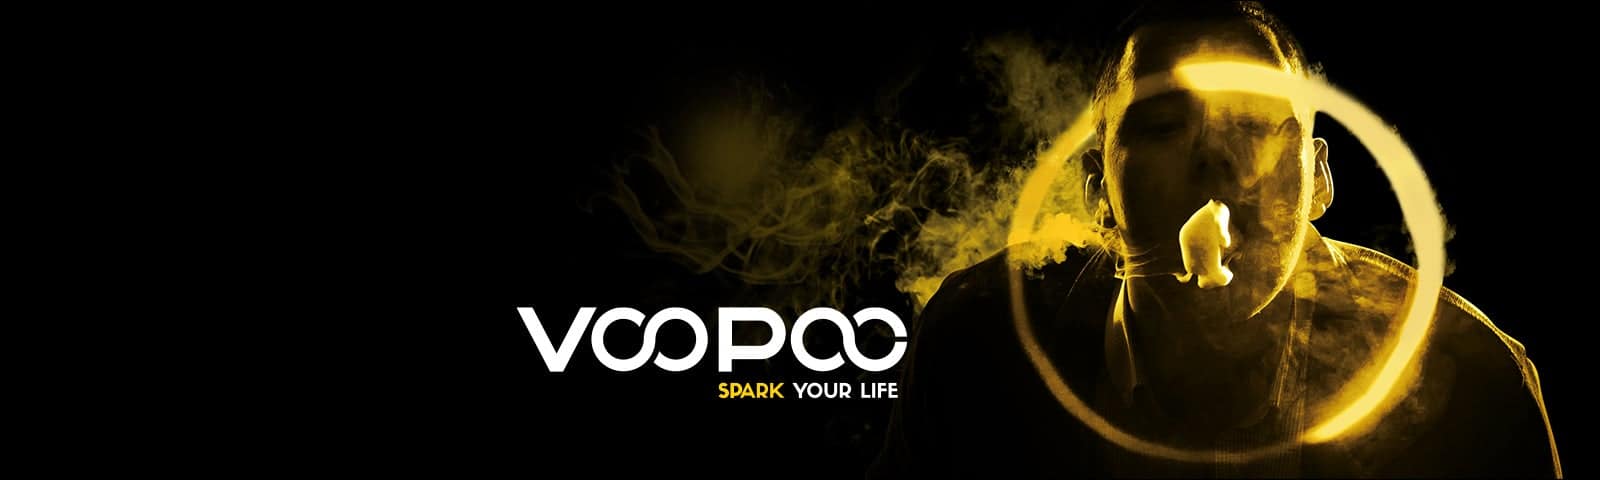 voopoo relancez votre vie en vapotant arrêtez de fumer